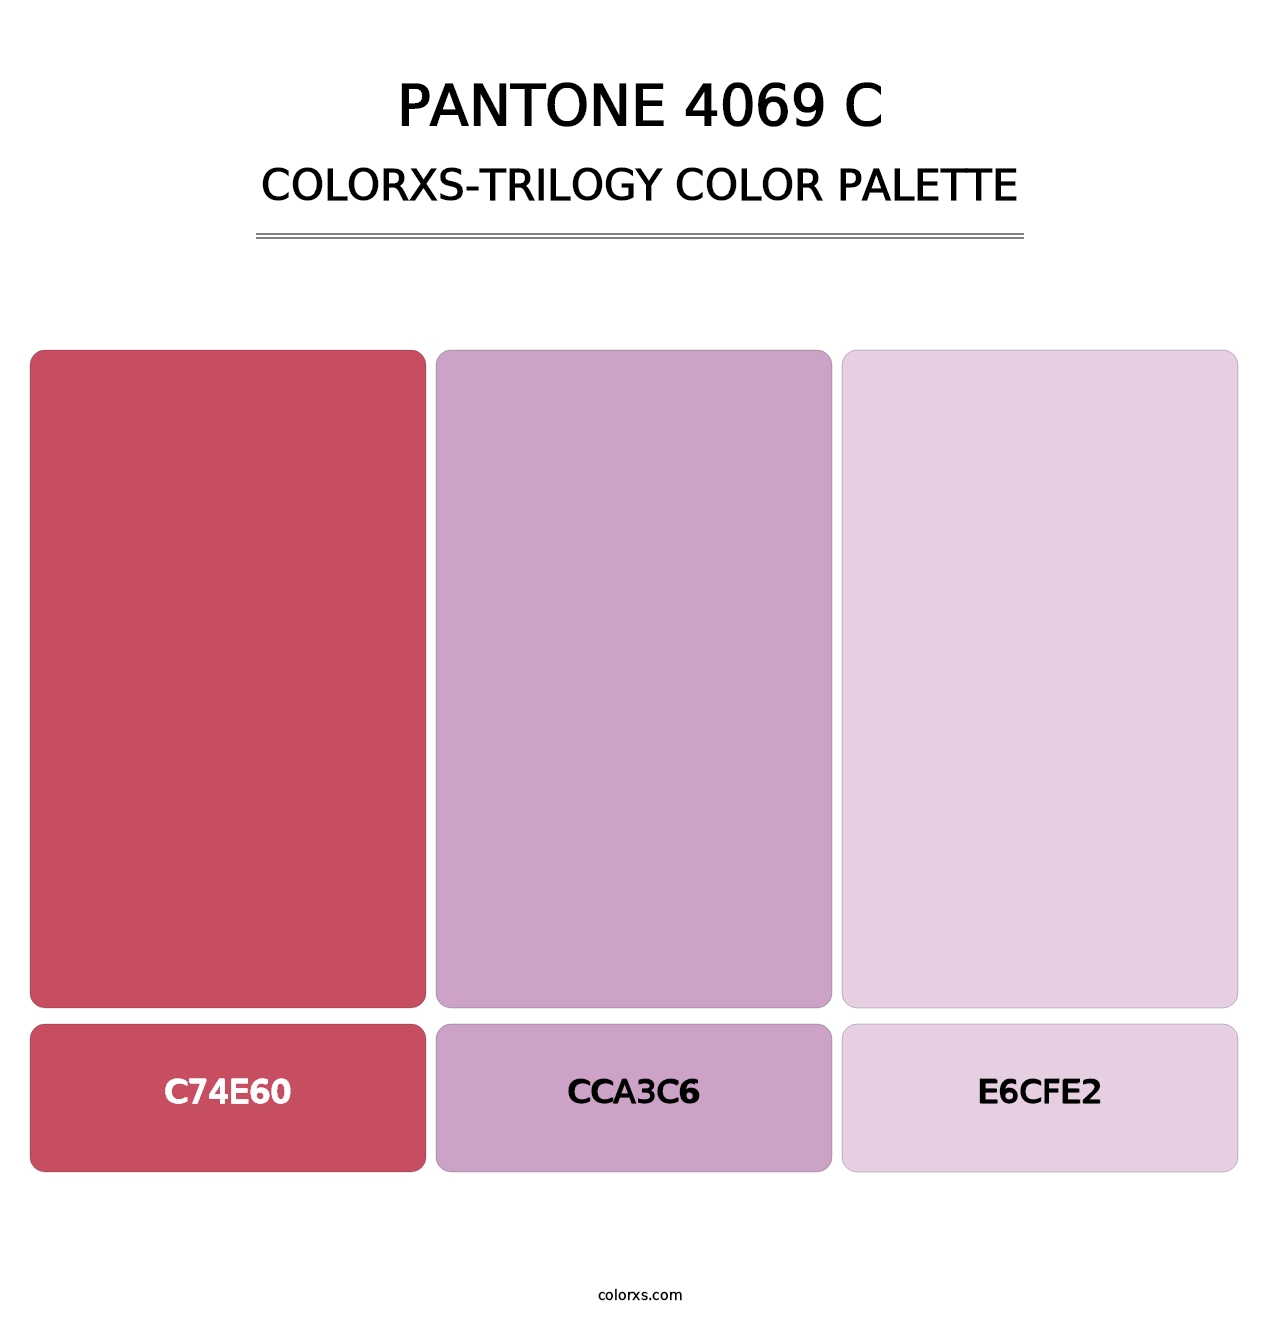 PANTONE 4069 C - Colorxs Trilogy Palette